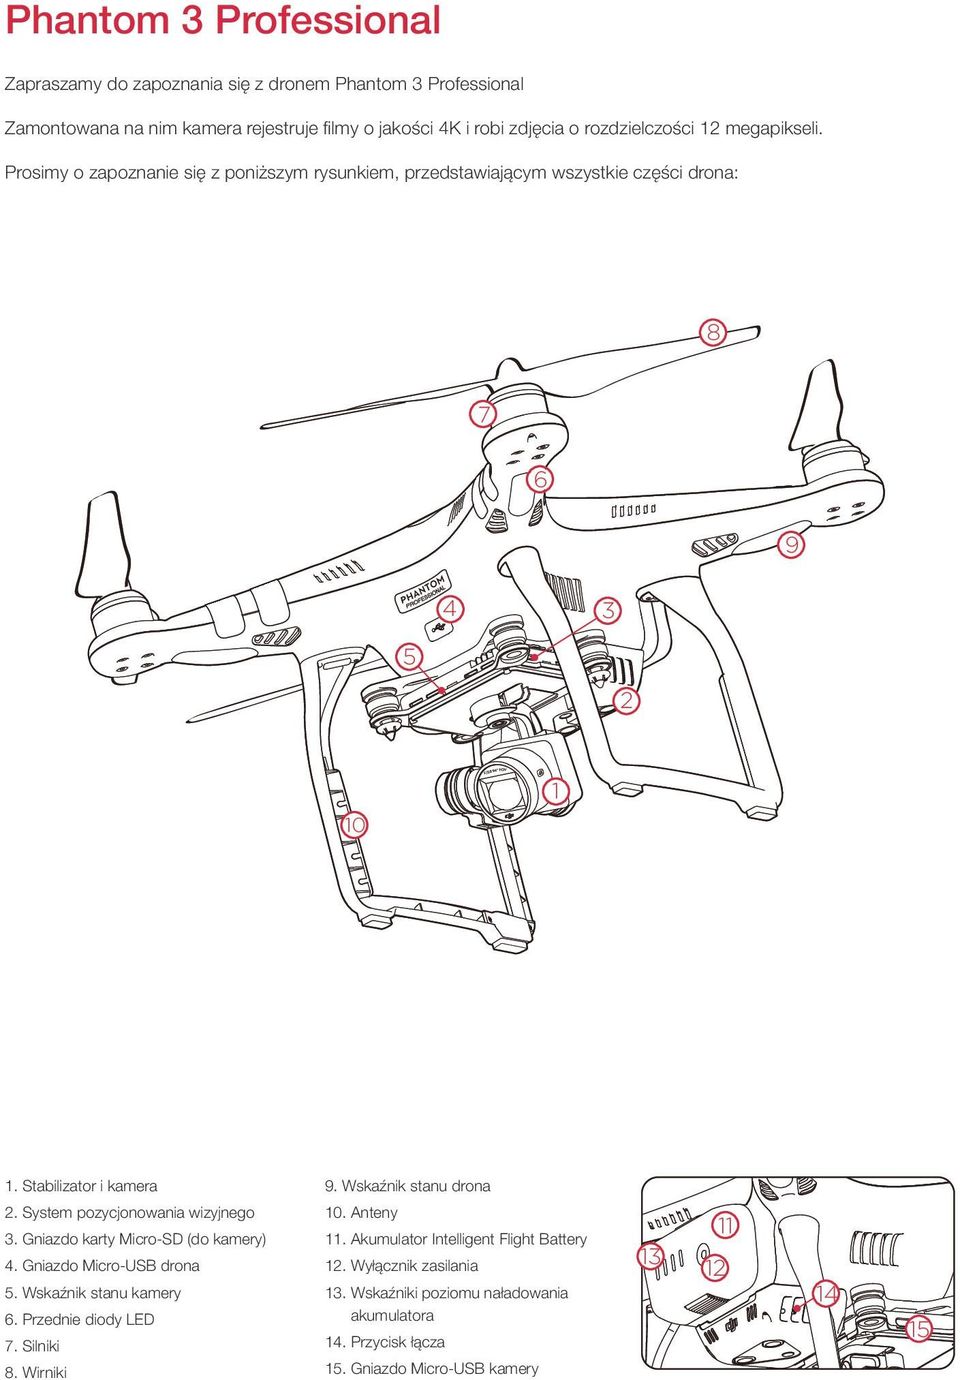 Wskaźnik stanu drona 2. System pozycjonowania wizyjnego 3. Gniazdo karty Micro-SD (do kamery) 4. Gniazdo Micro-USB drona 5. Wskaźnik stanu kamery 6. Przednie diody LED 7.